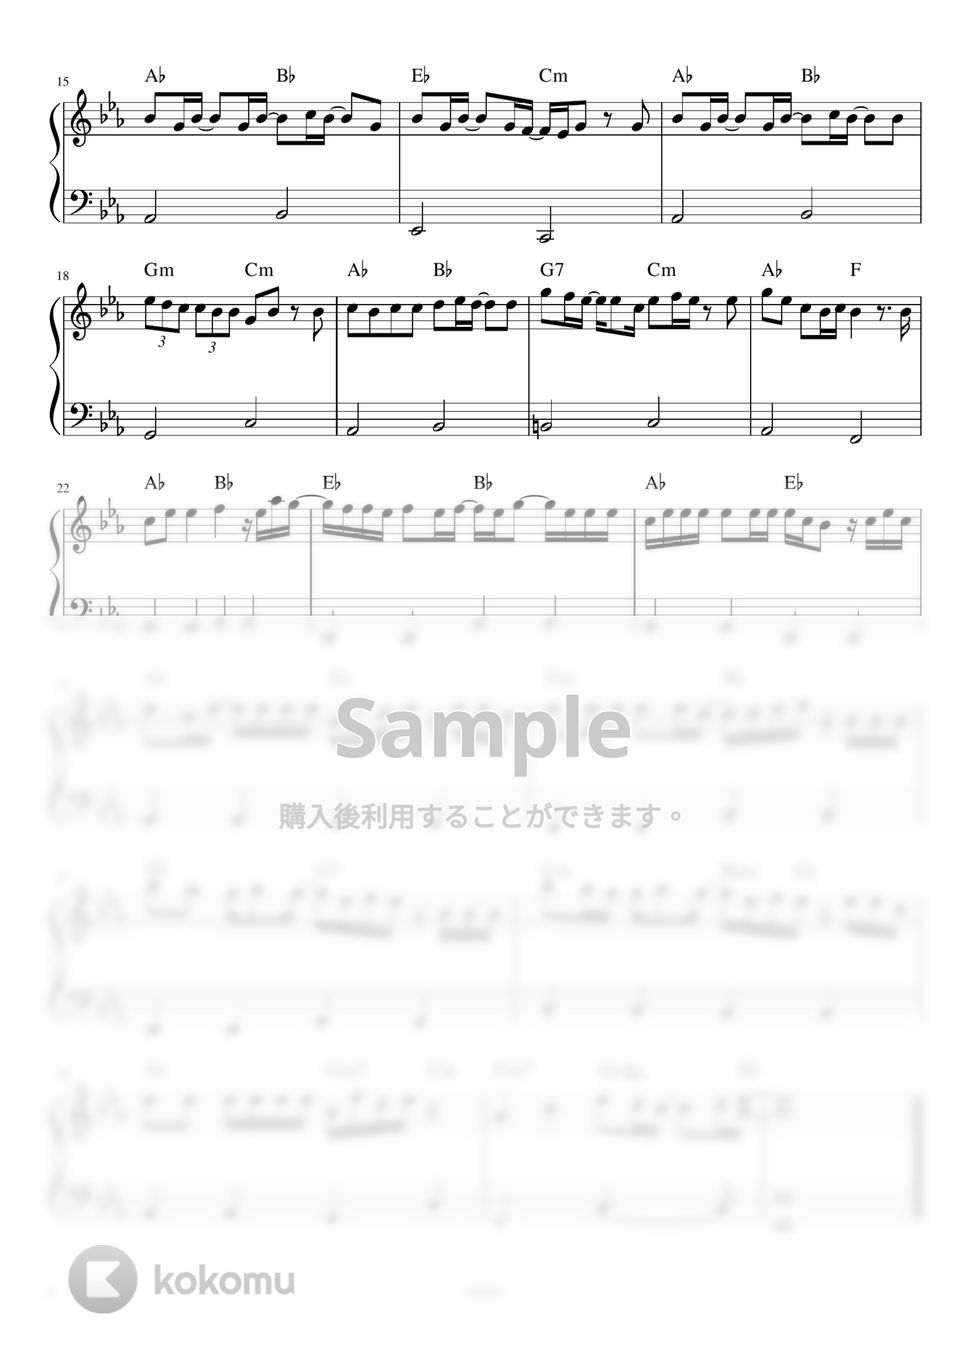 あいみょん - 猫 (ピアノレッスン初級簡単) by orinpia music